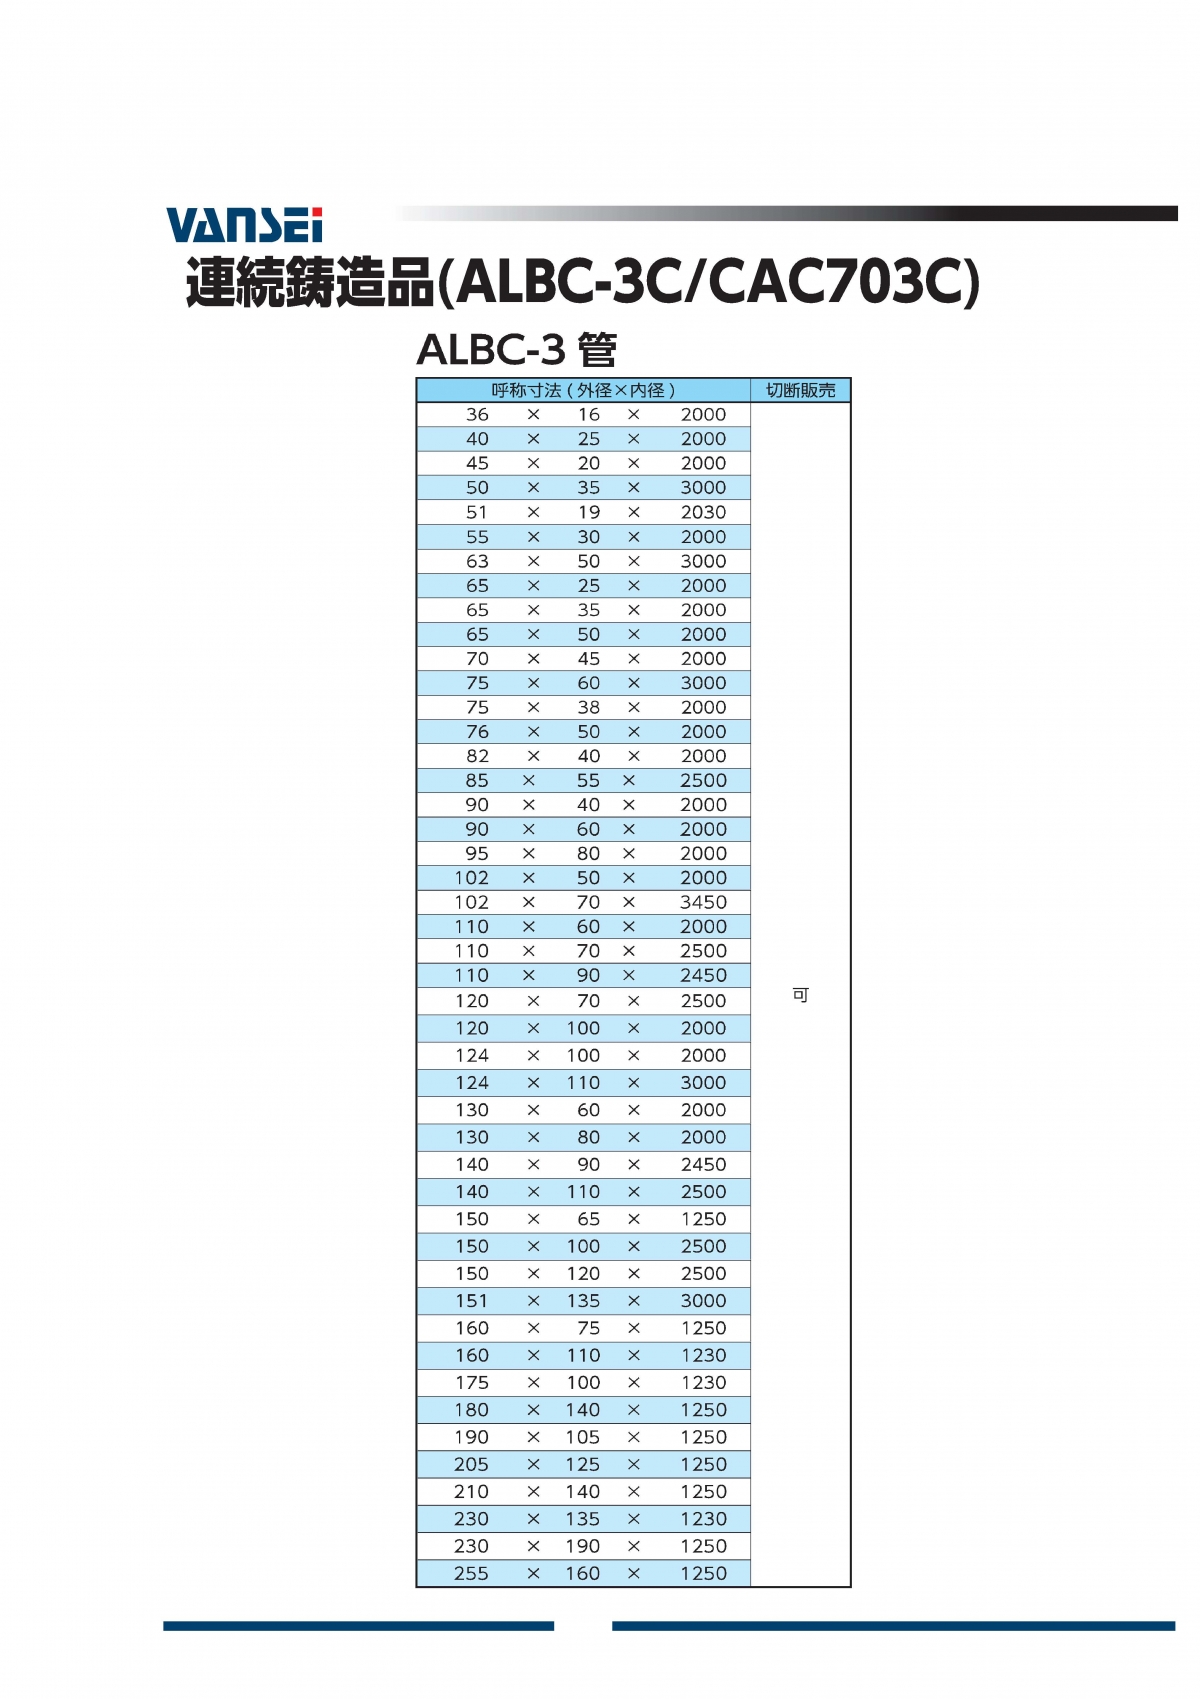 ALBC-3パイプ(CAC703C)